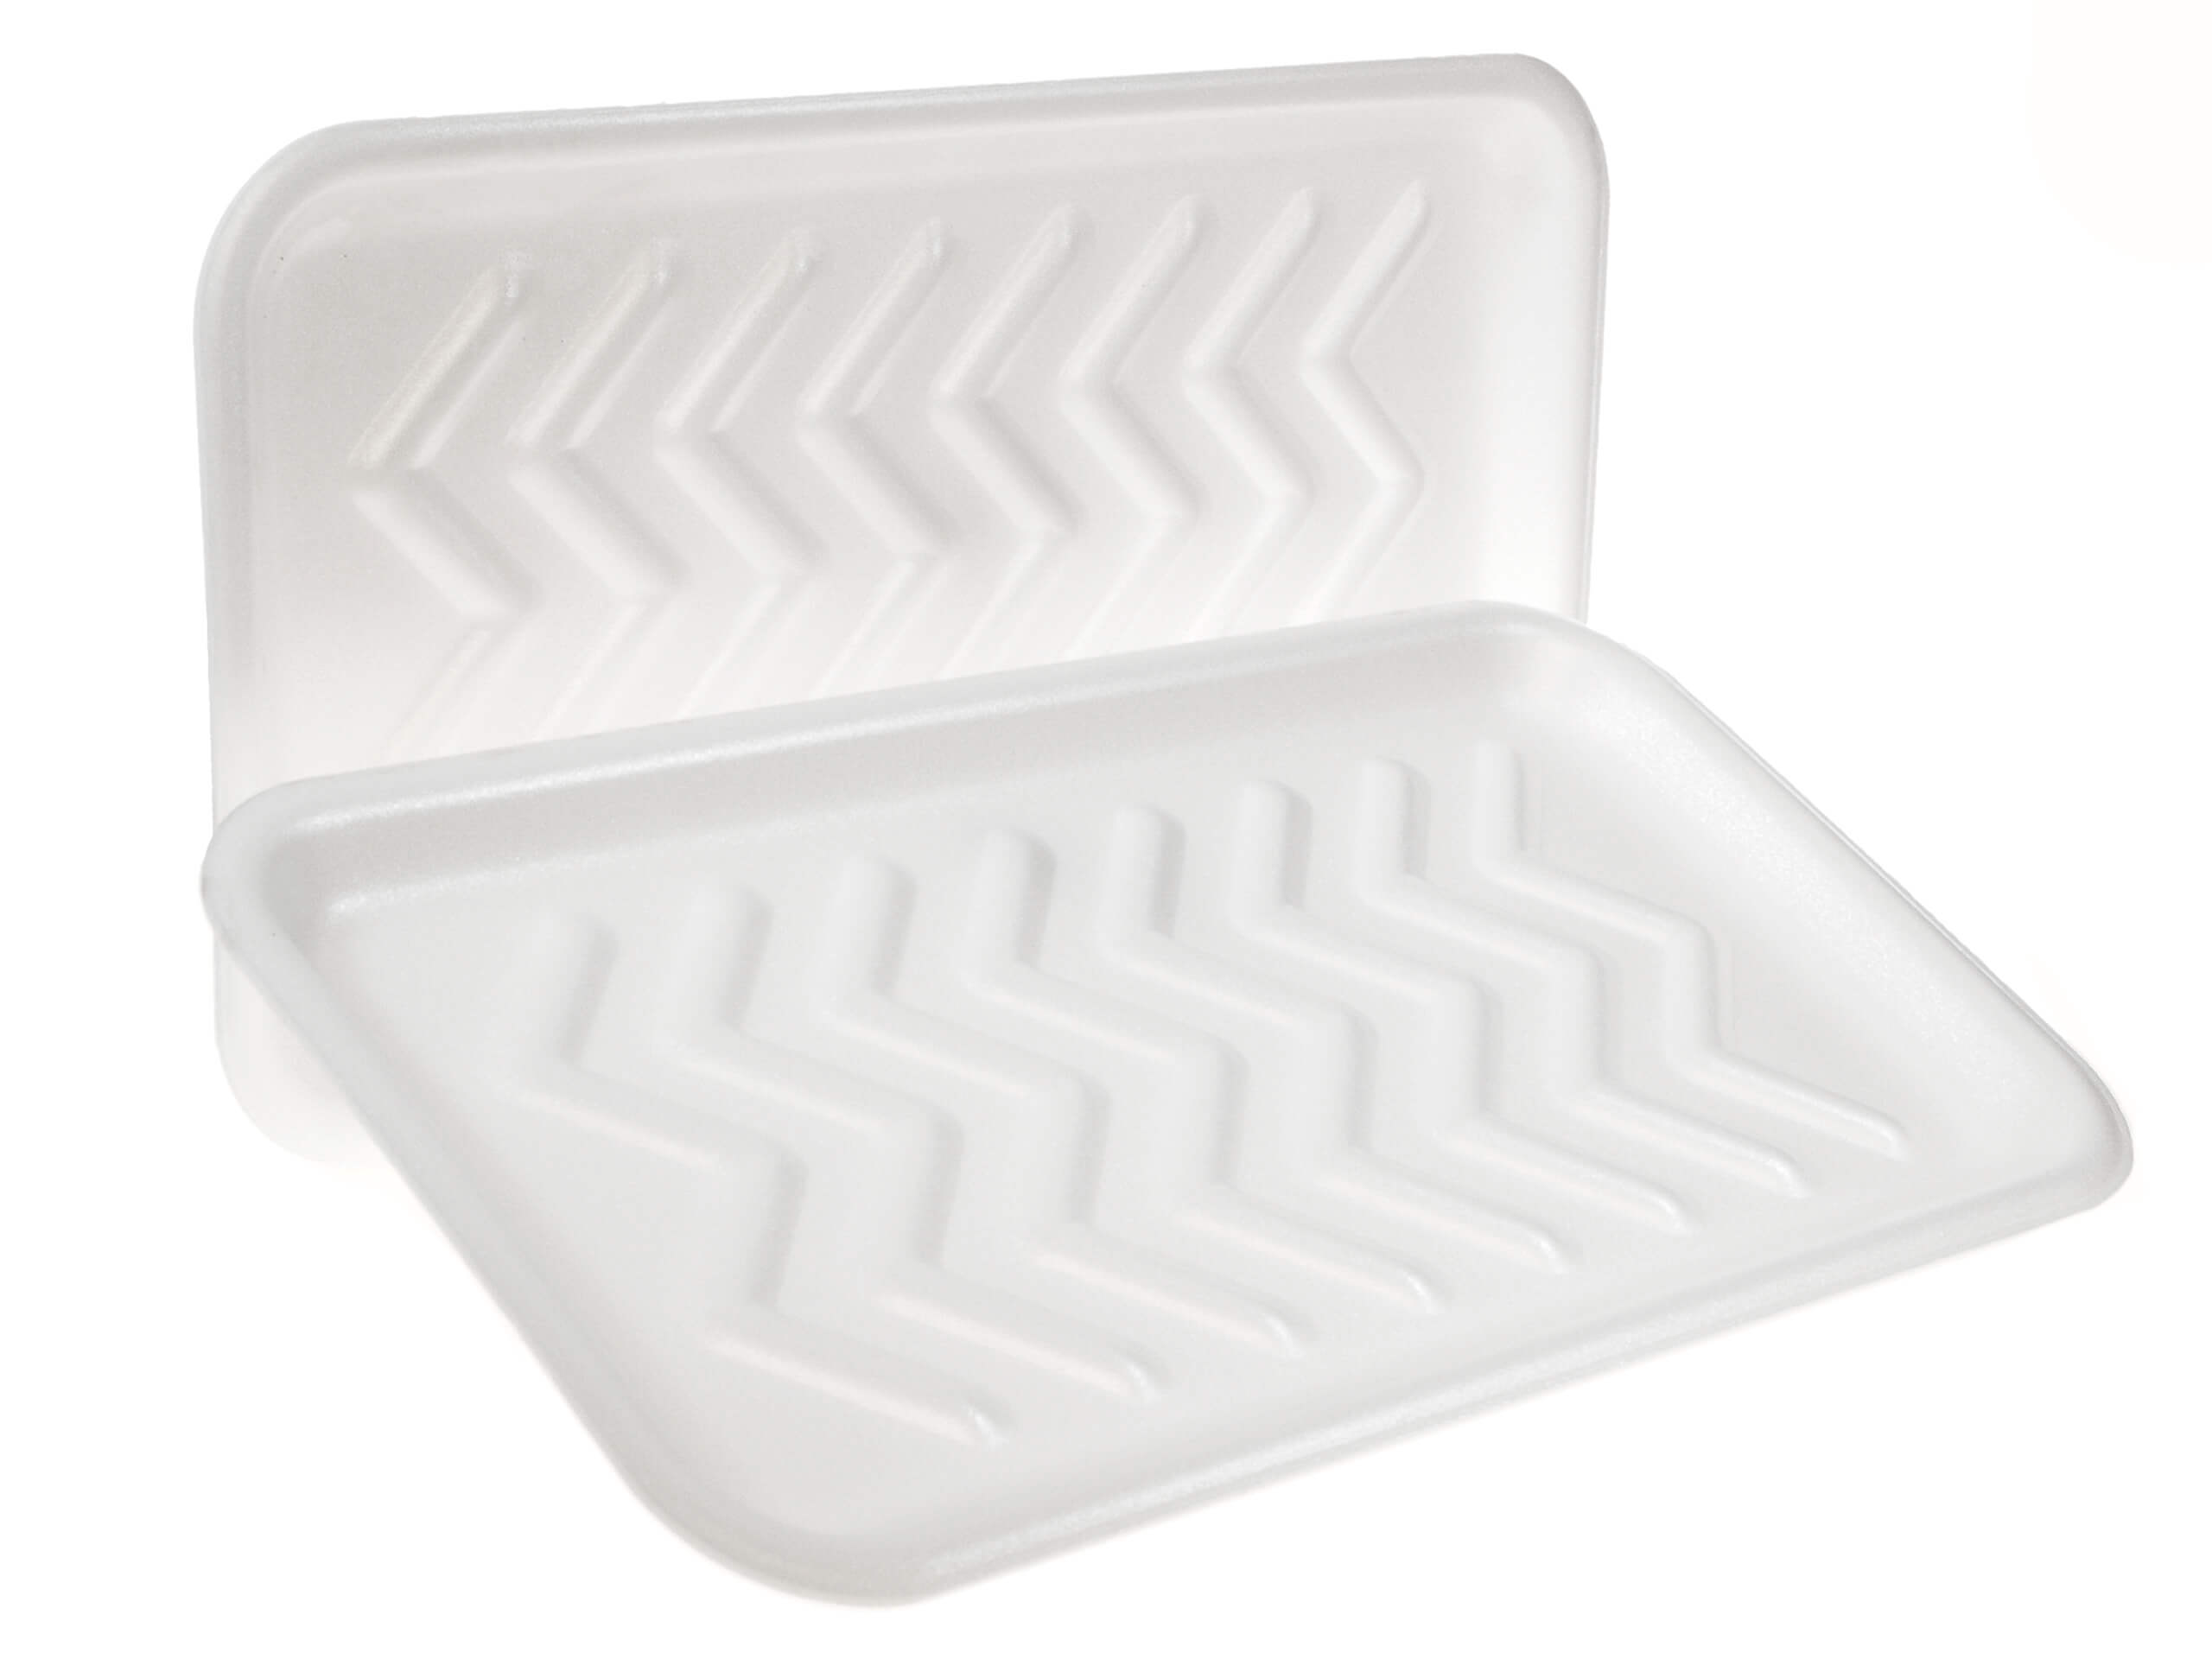 CKF 88125 White 25s Foam Meat Trays 15x8x5/8 - 250/CS